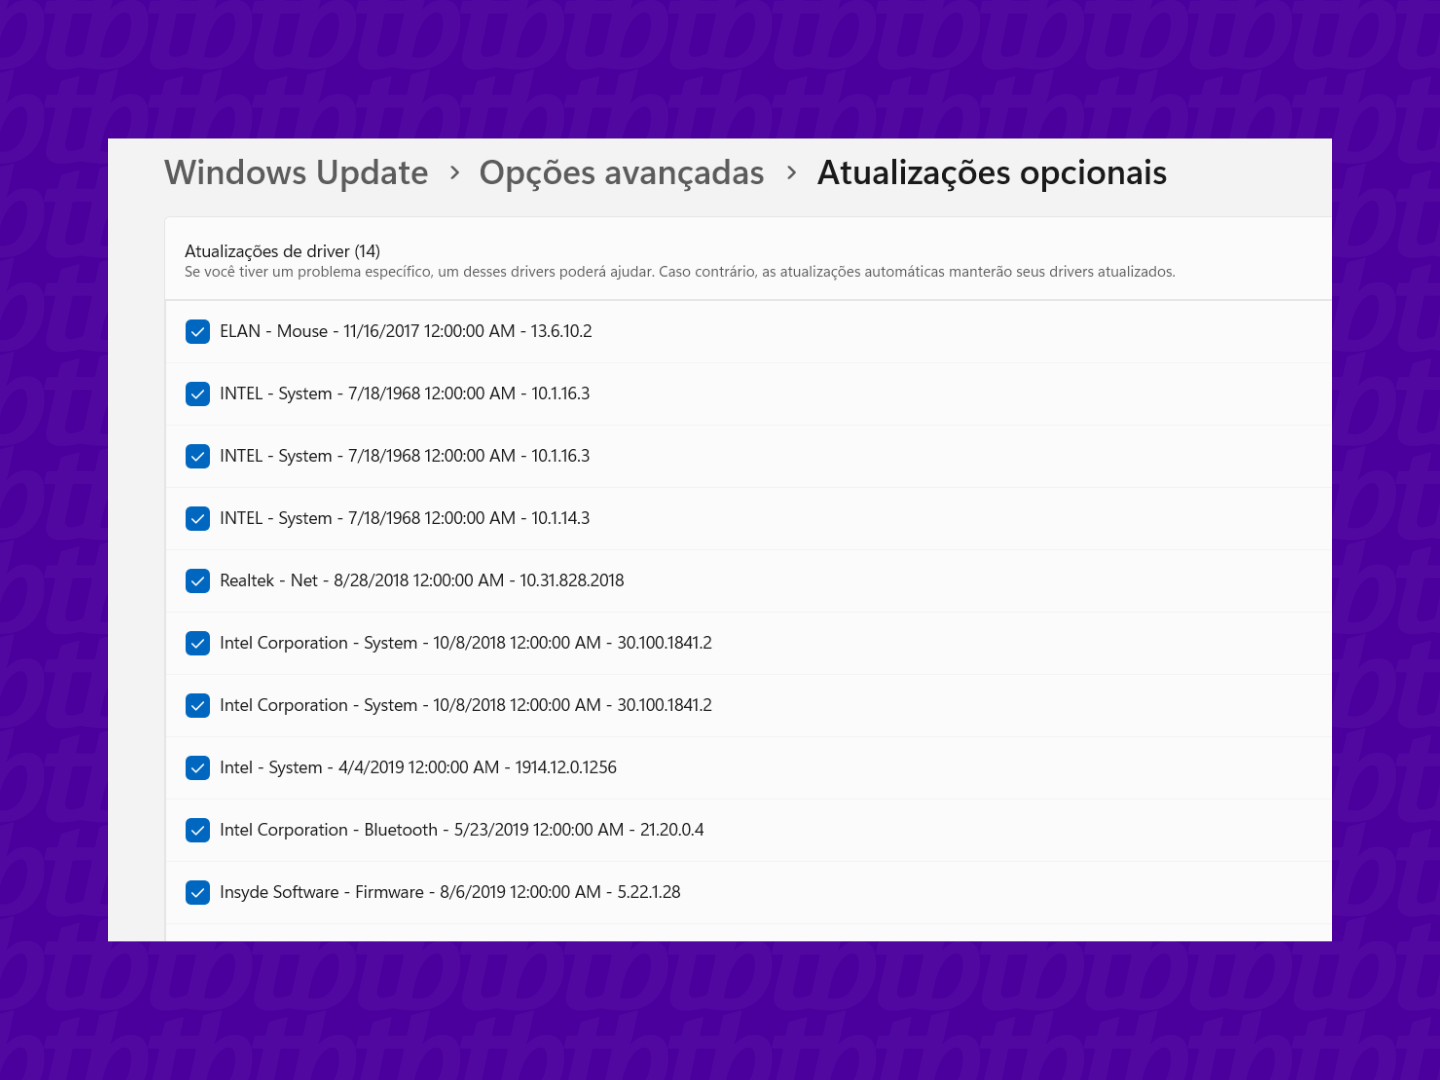 Windows update - atualizações opcionais 